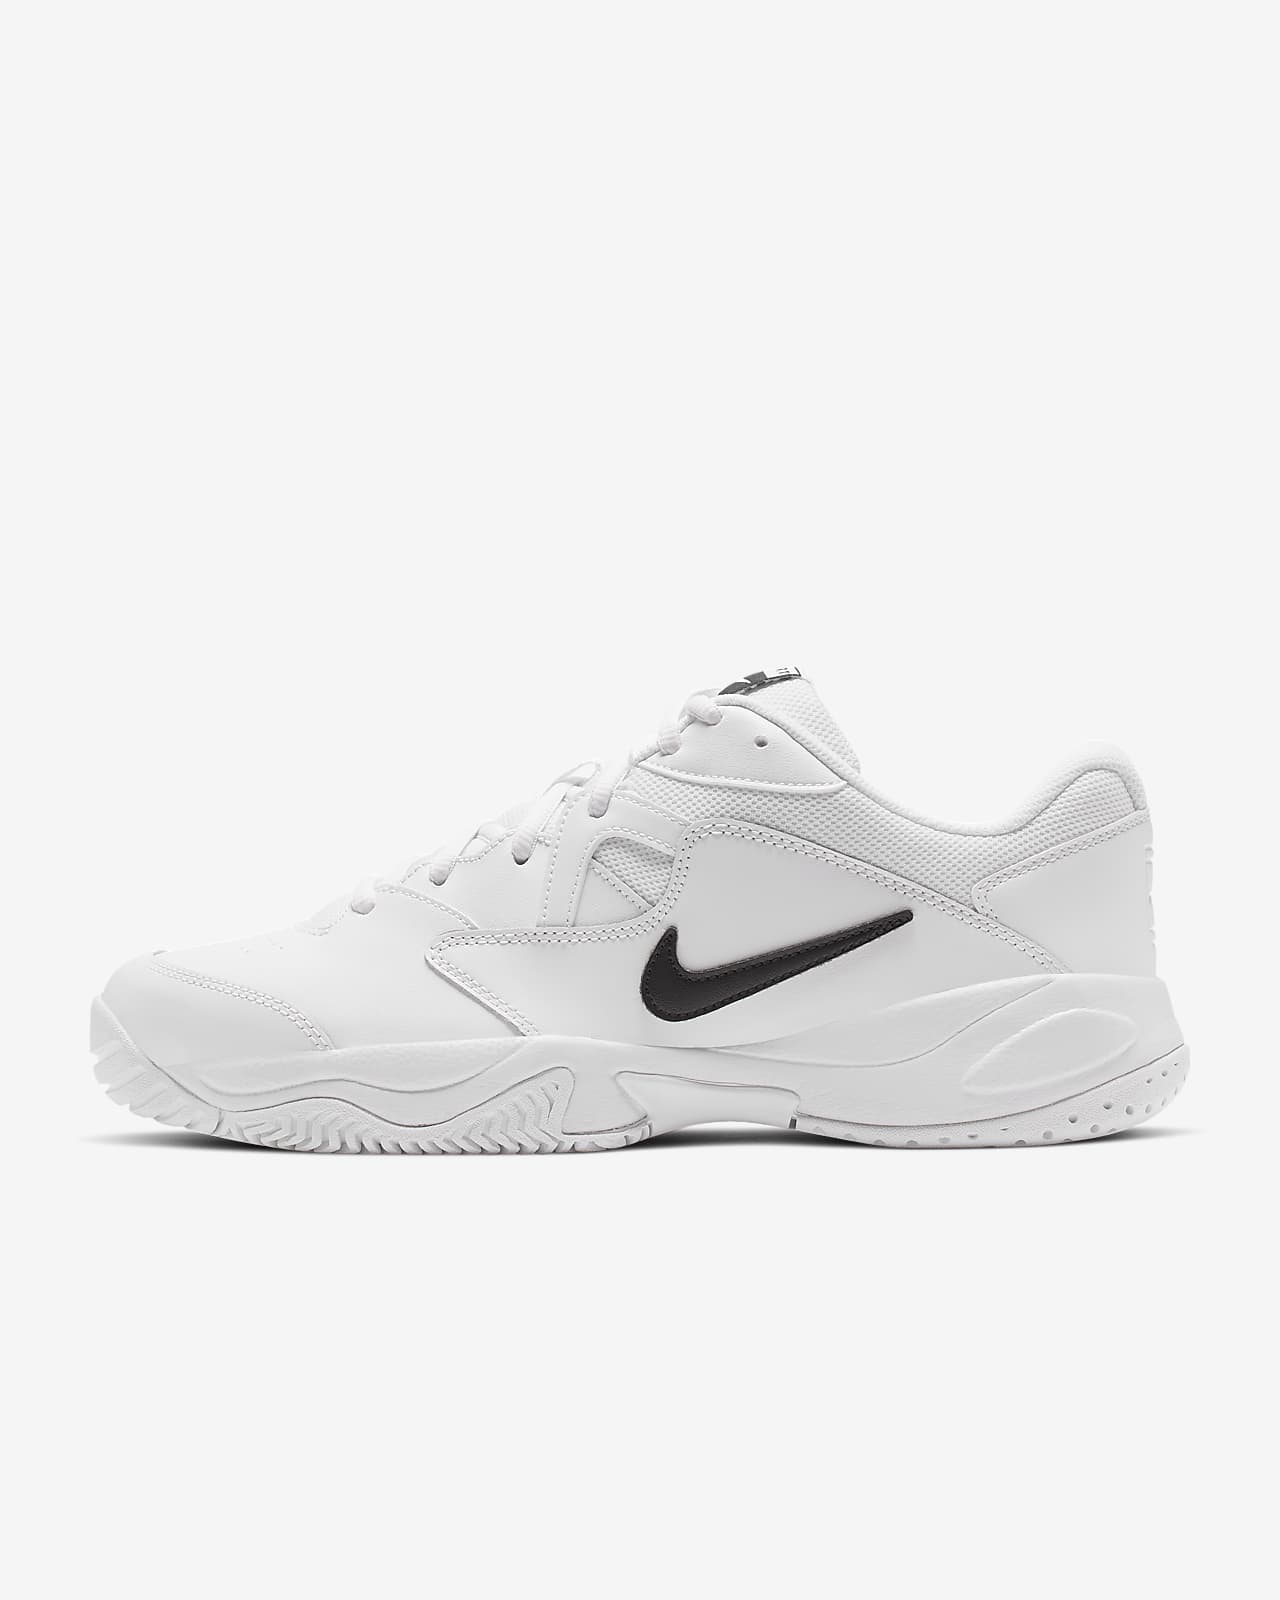 Мужские теннисные кроссовки для игры на кортах с твердым покрытием NikeCourt Lite 2